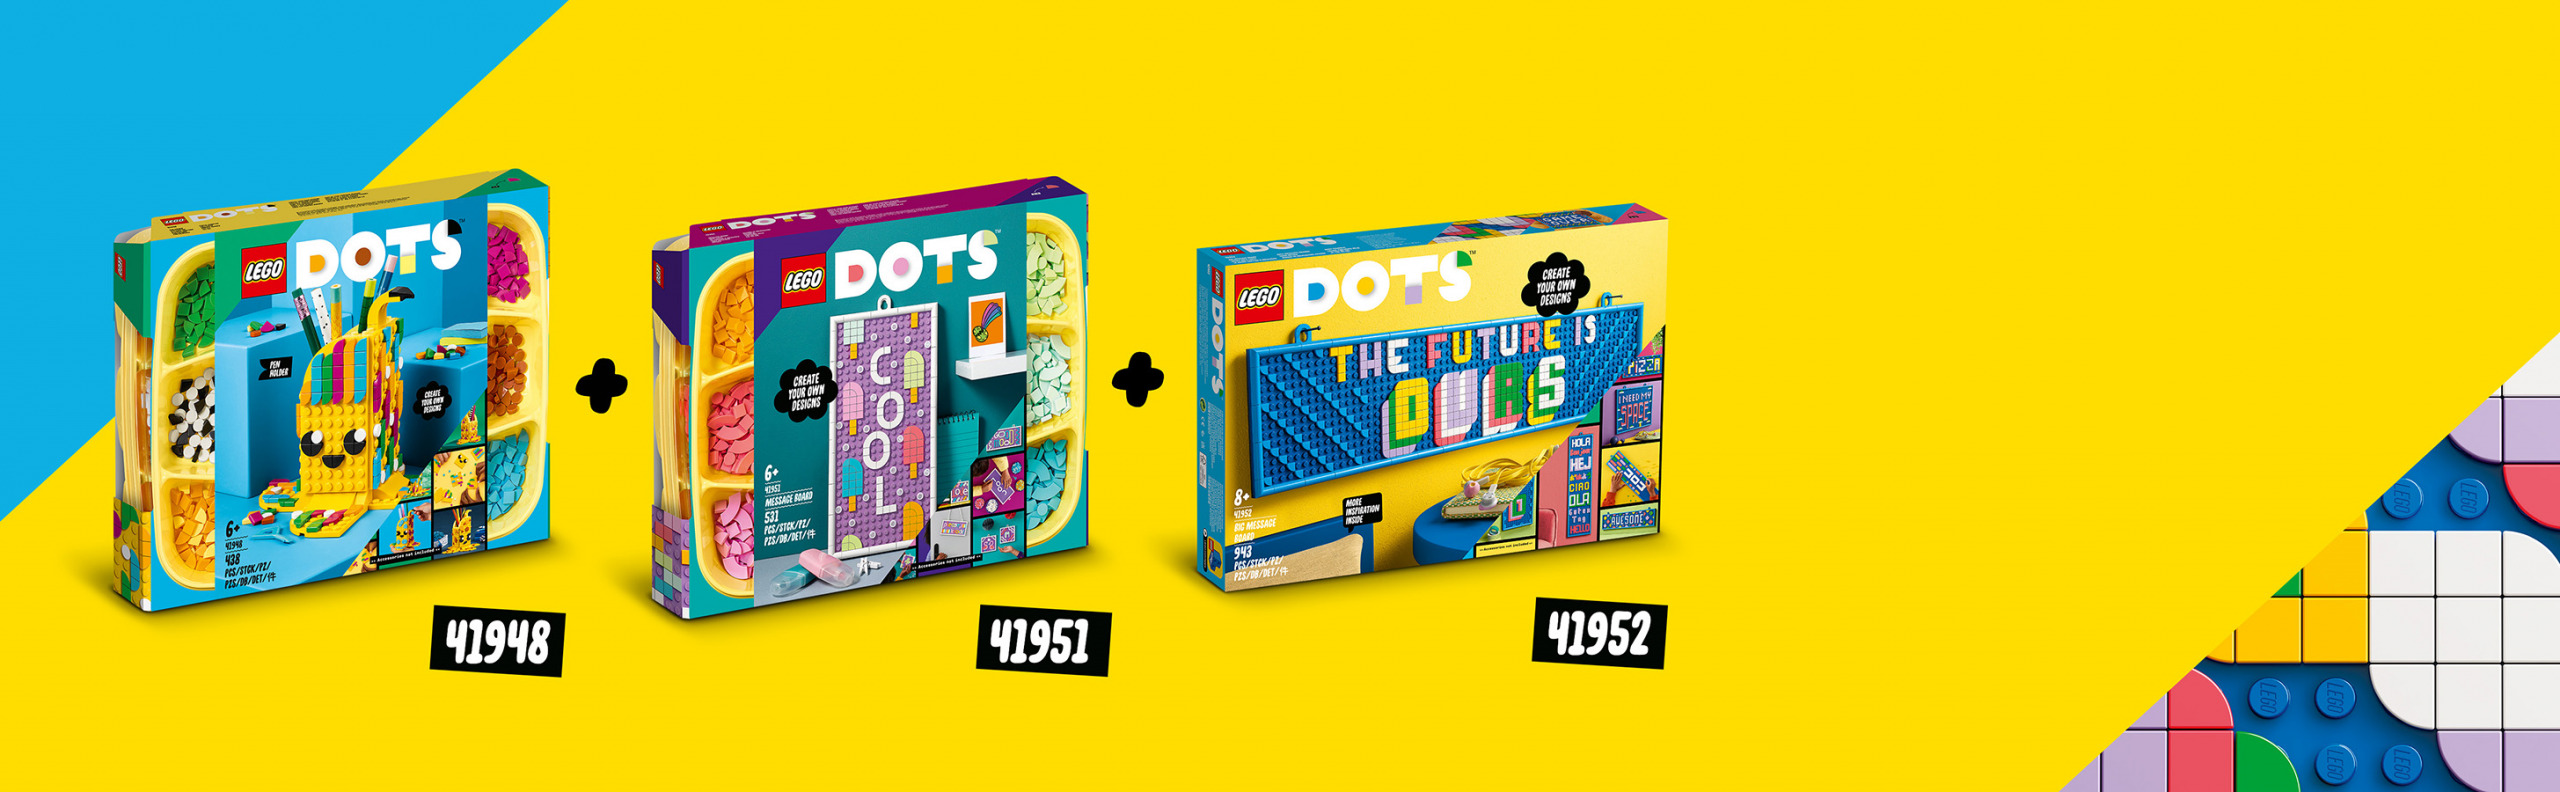 LEGO DOTS - Muitos DOTS – Letras -41950